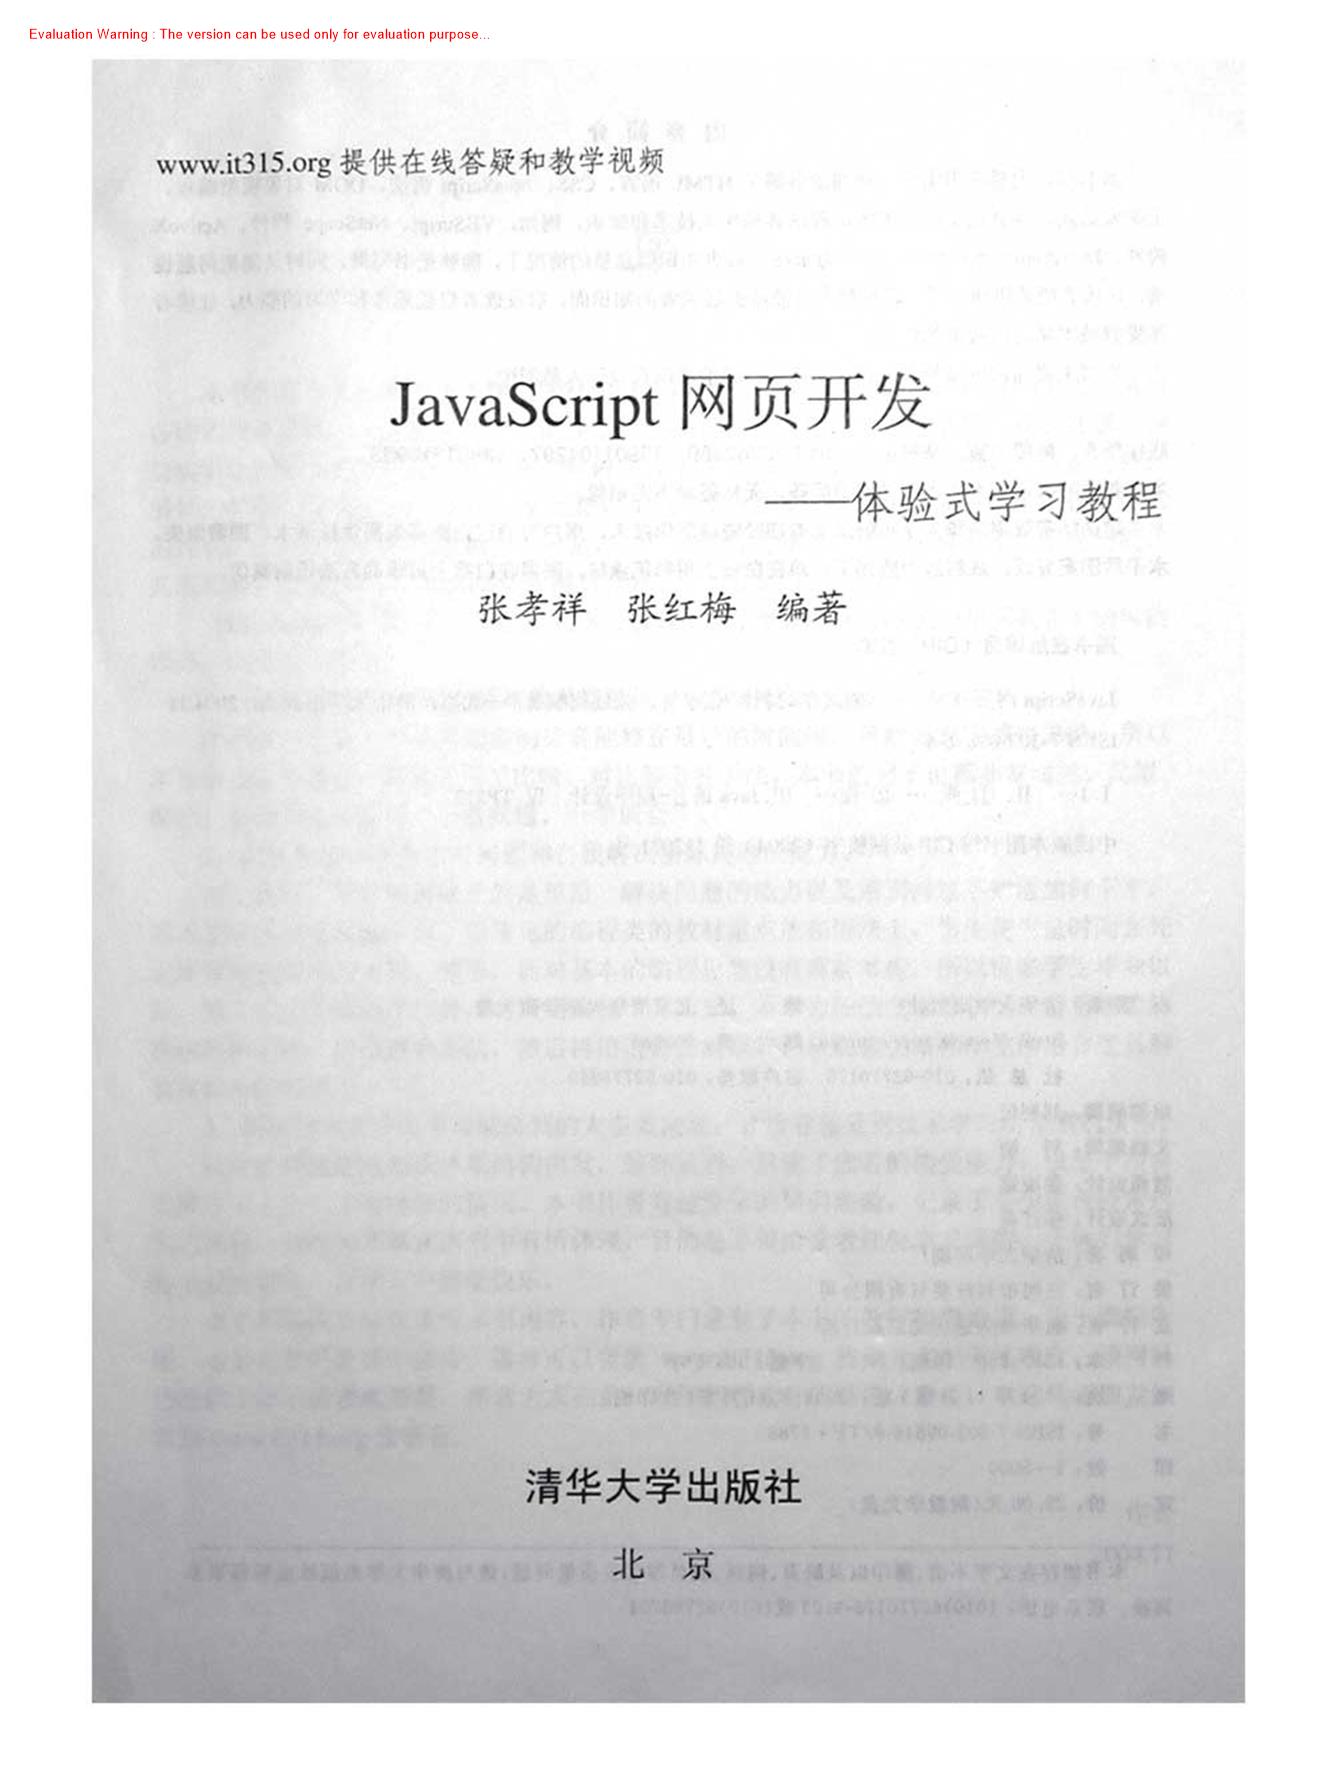 javascript网页开发-体验式学习教程_张孝祥